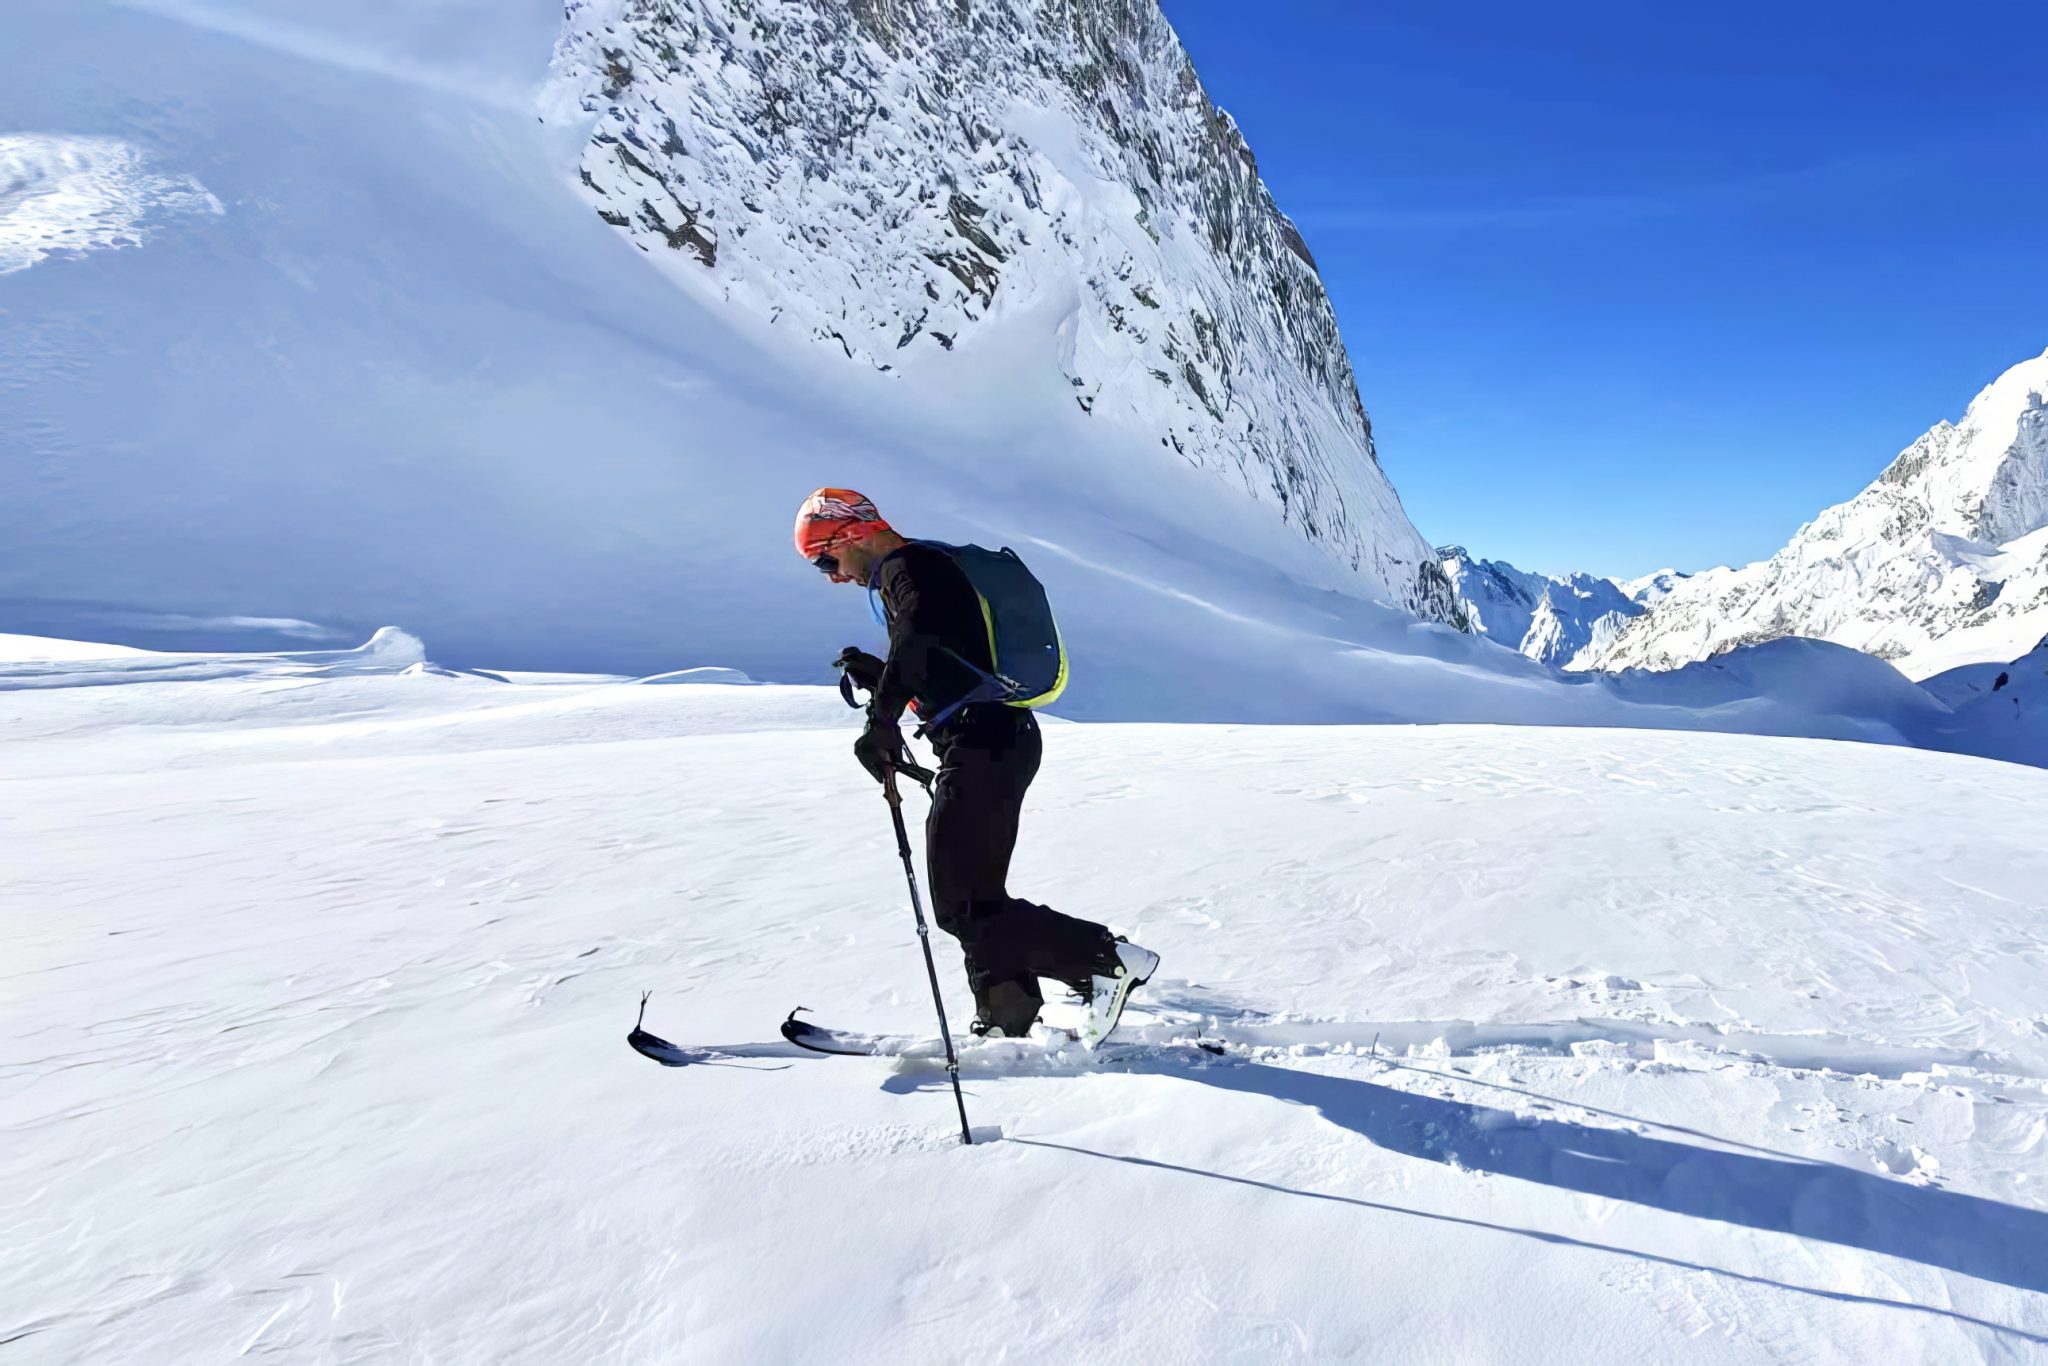 Sous-Vêtements Thermiques pour l'Alpinisme et la Haute Montagne